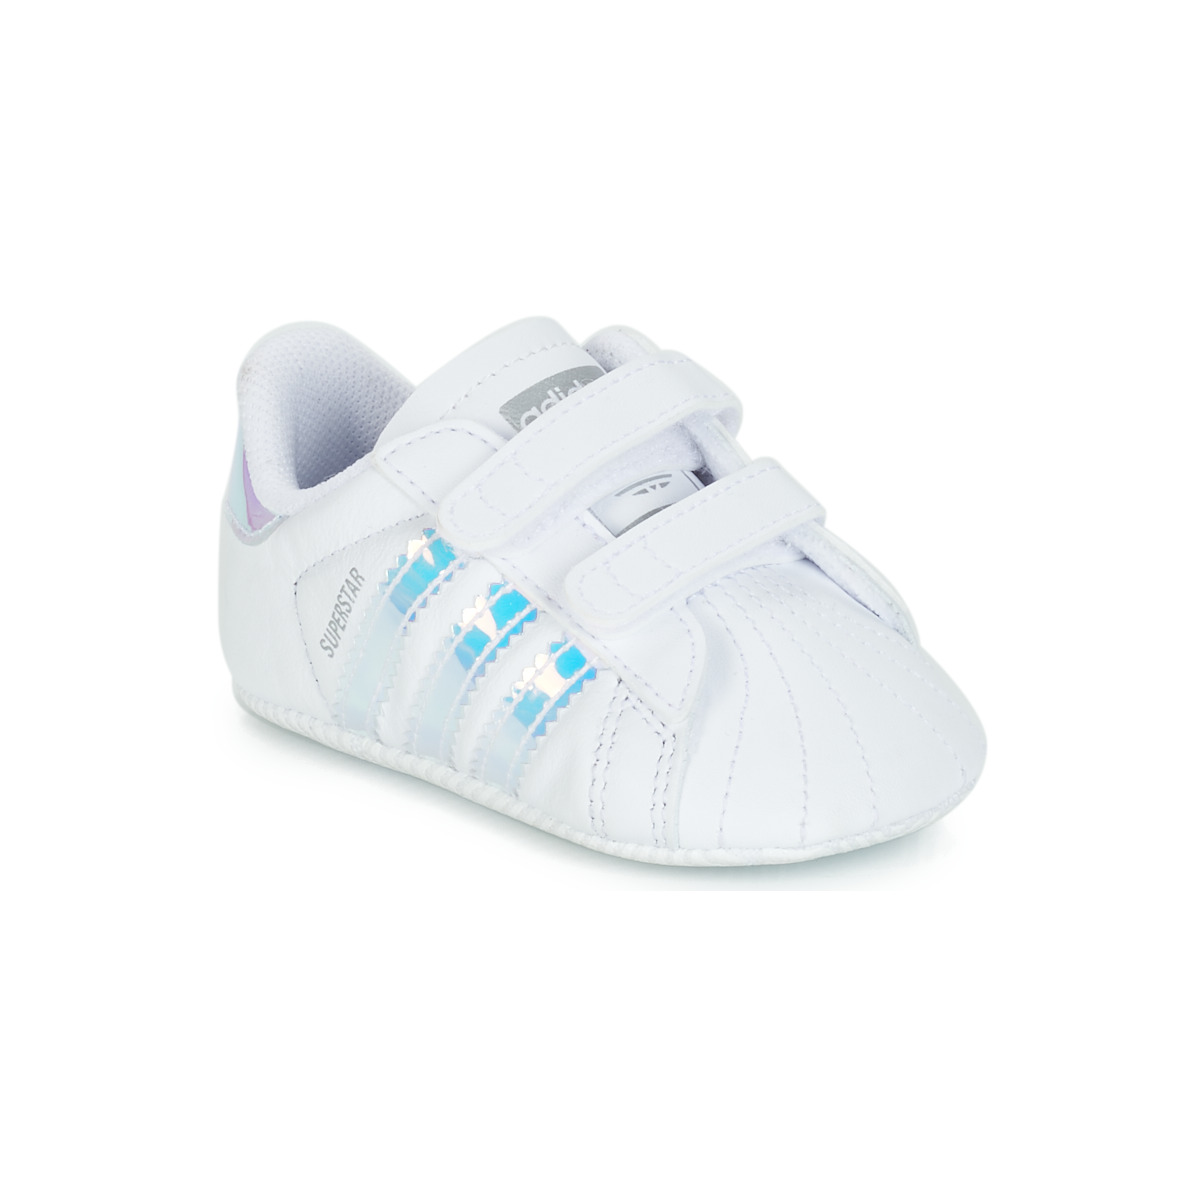 Παπούτσια Κορίτσι Χαμηλά Sneakers adidas Originals SUPERSTAR CRIB Άσπρο